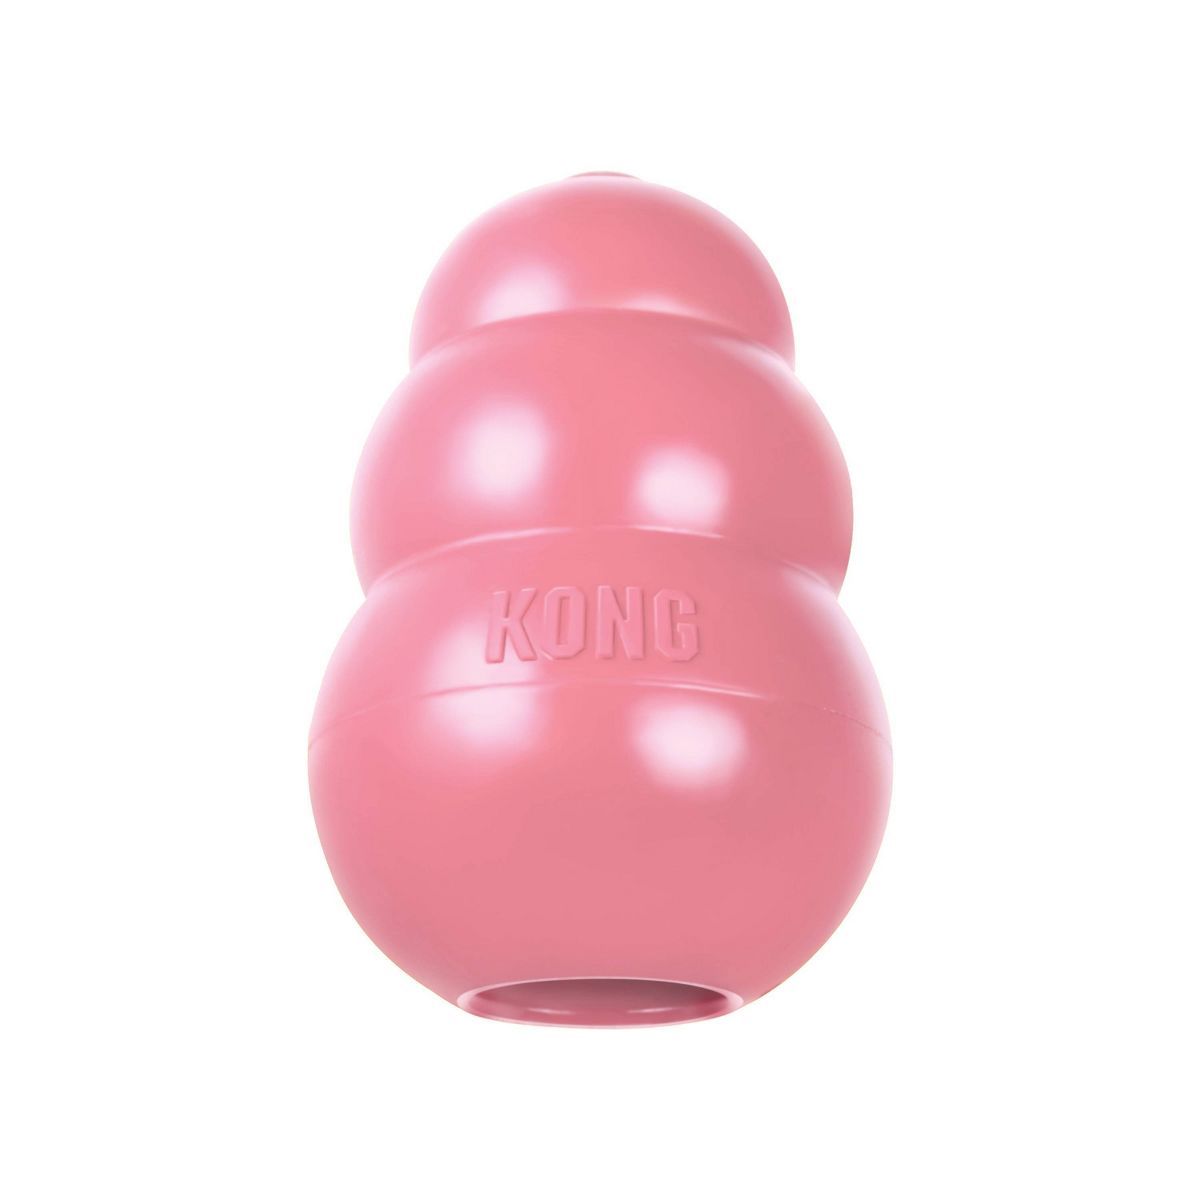 KONG Puppy Dog Toy - Pink | Target